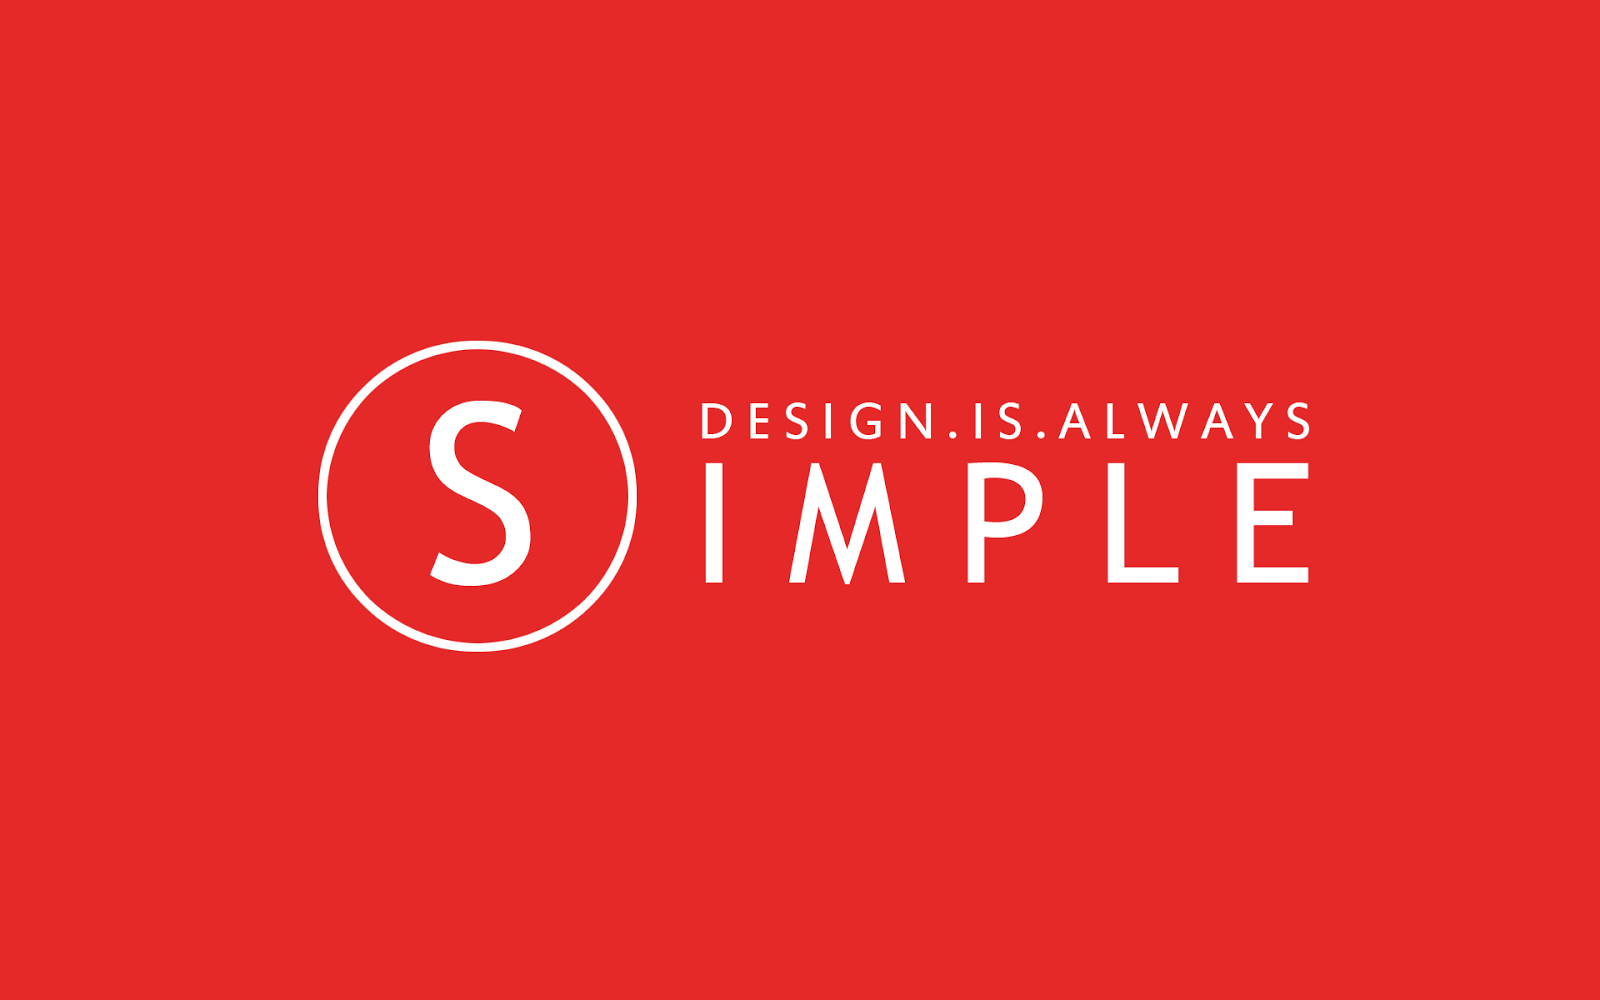 Design__is__always_simple__akhil___studios.png